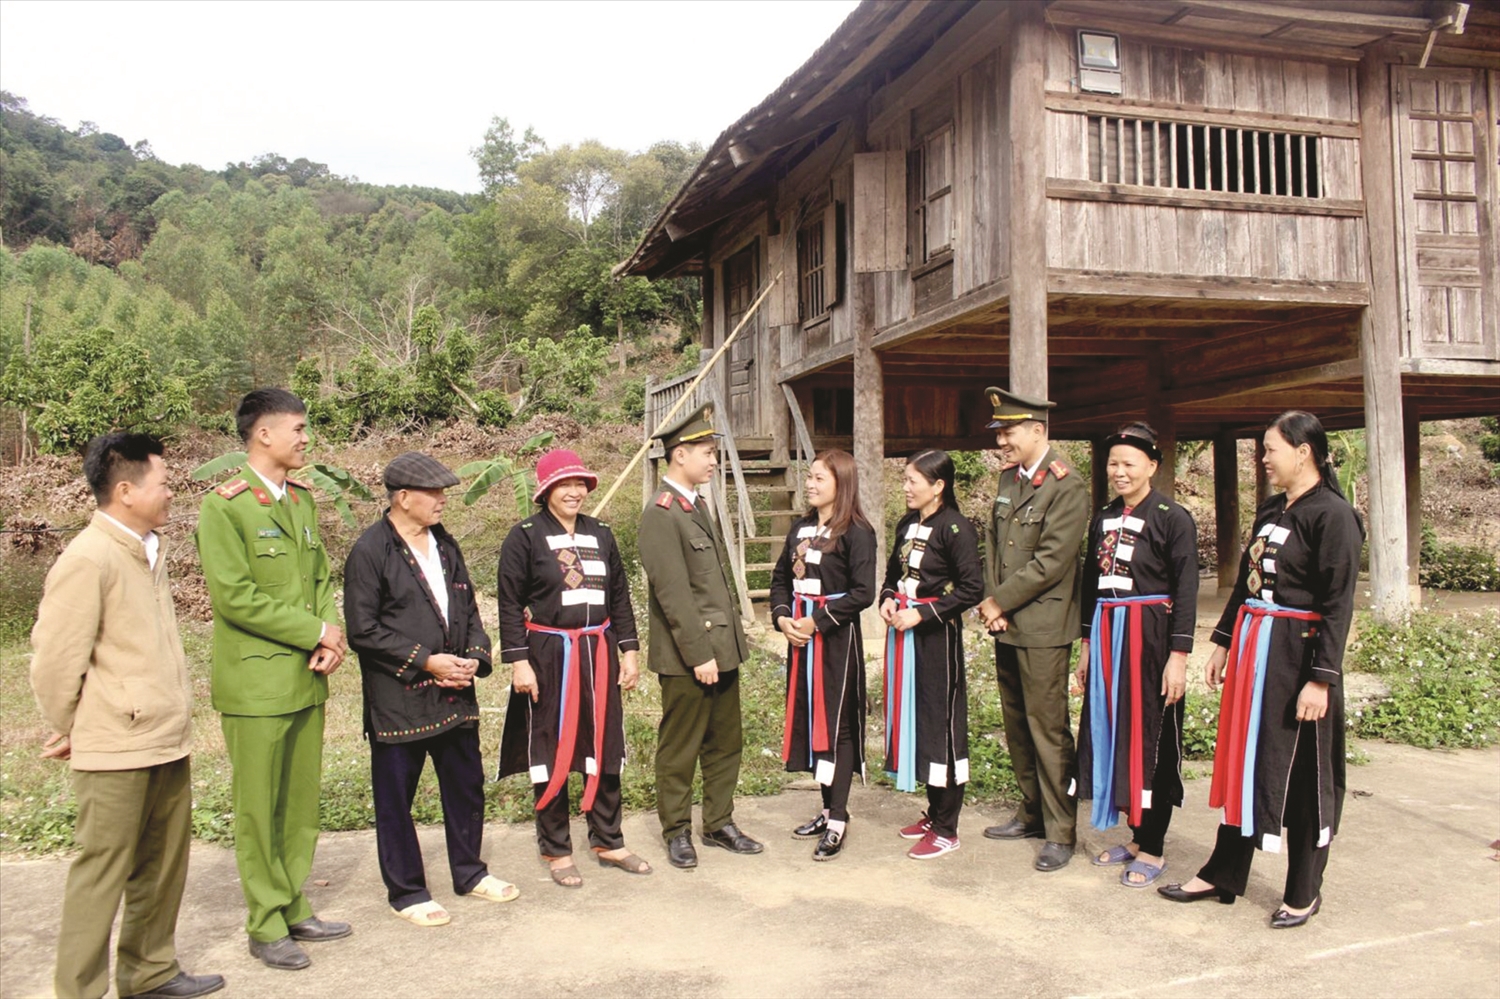 Cán bộ Đội An ninh - Công an huyện Lục Nam, nắm bắt tình hình an ninh trật tự, đời sống dân cư vùng đồng bào DTTS. Ảnh TL